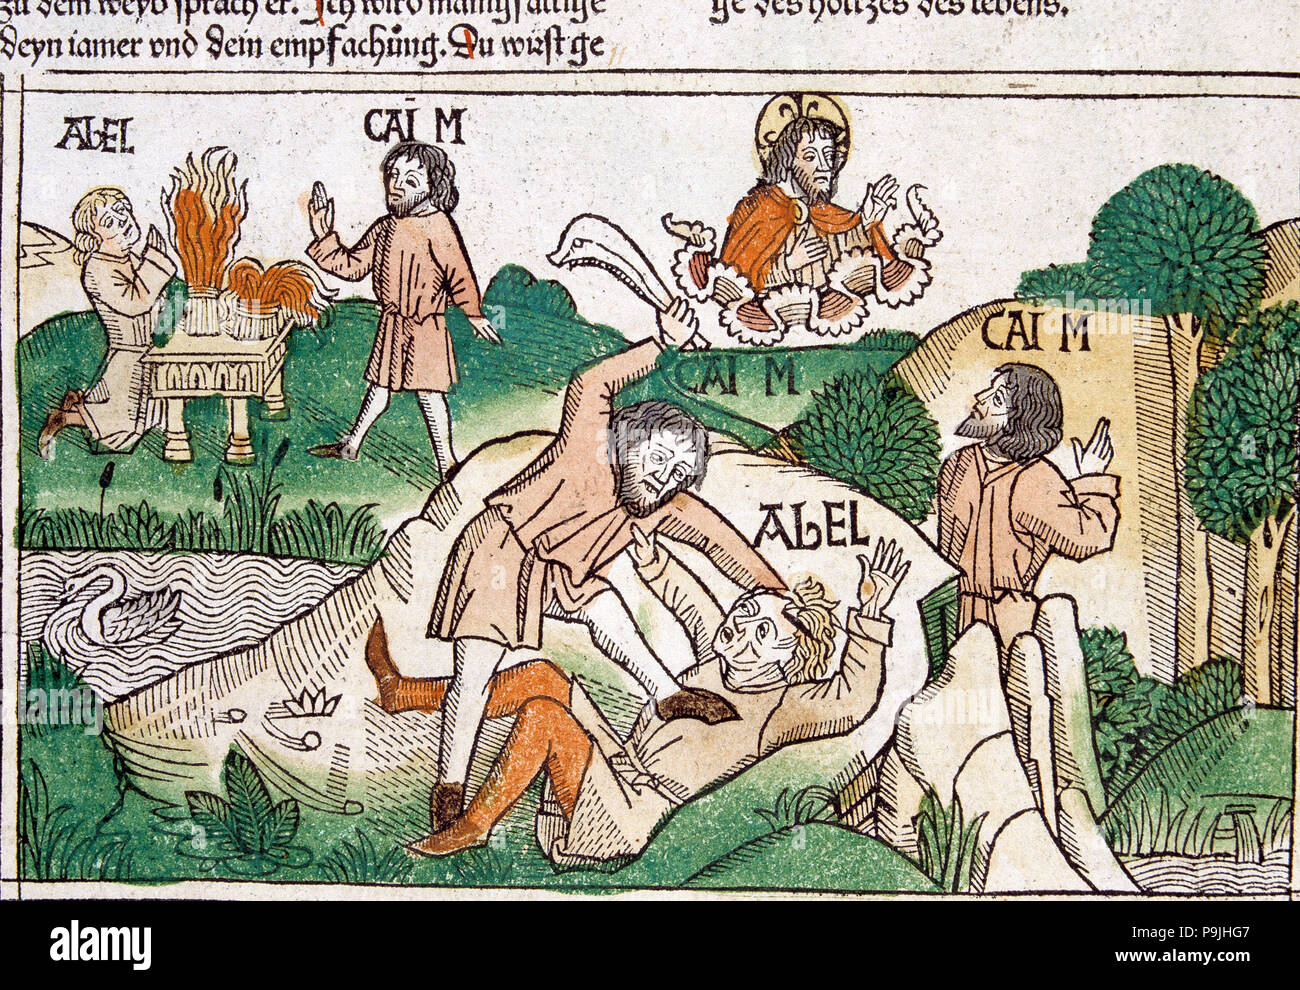 Kain und Abel, Szene, die in der Bibel von Nürnberg in Deutsch, 1483 geschrieben. Stockfoto